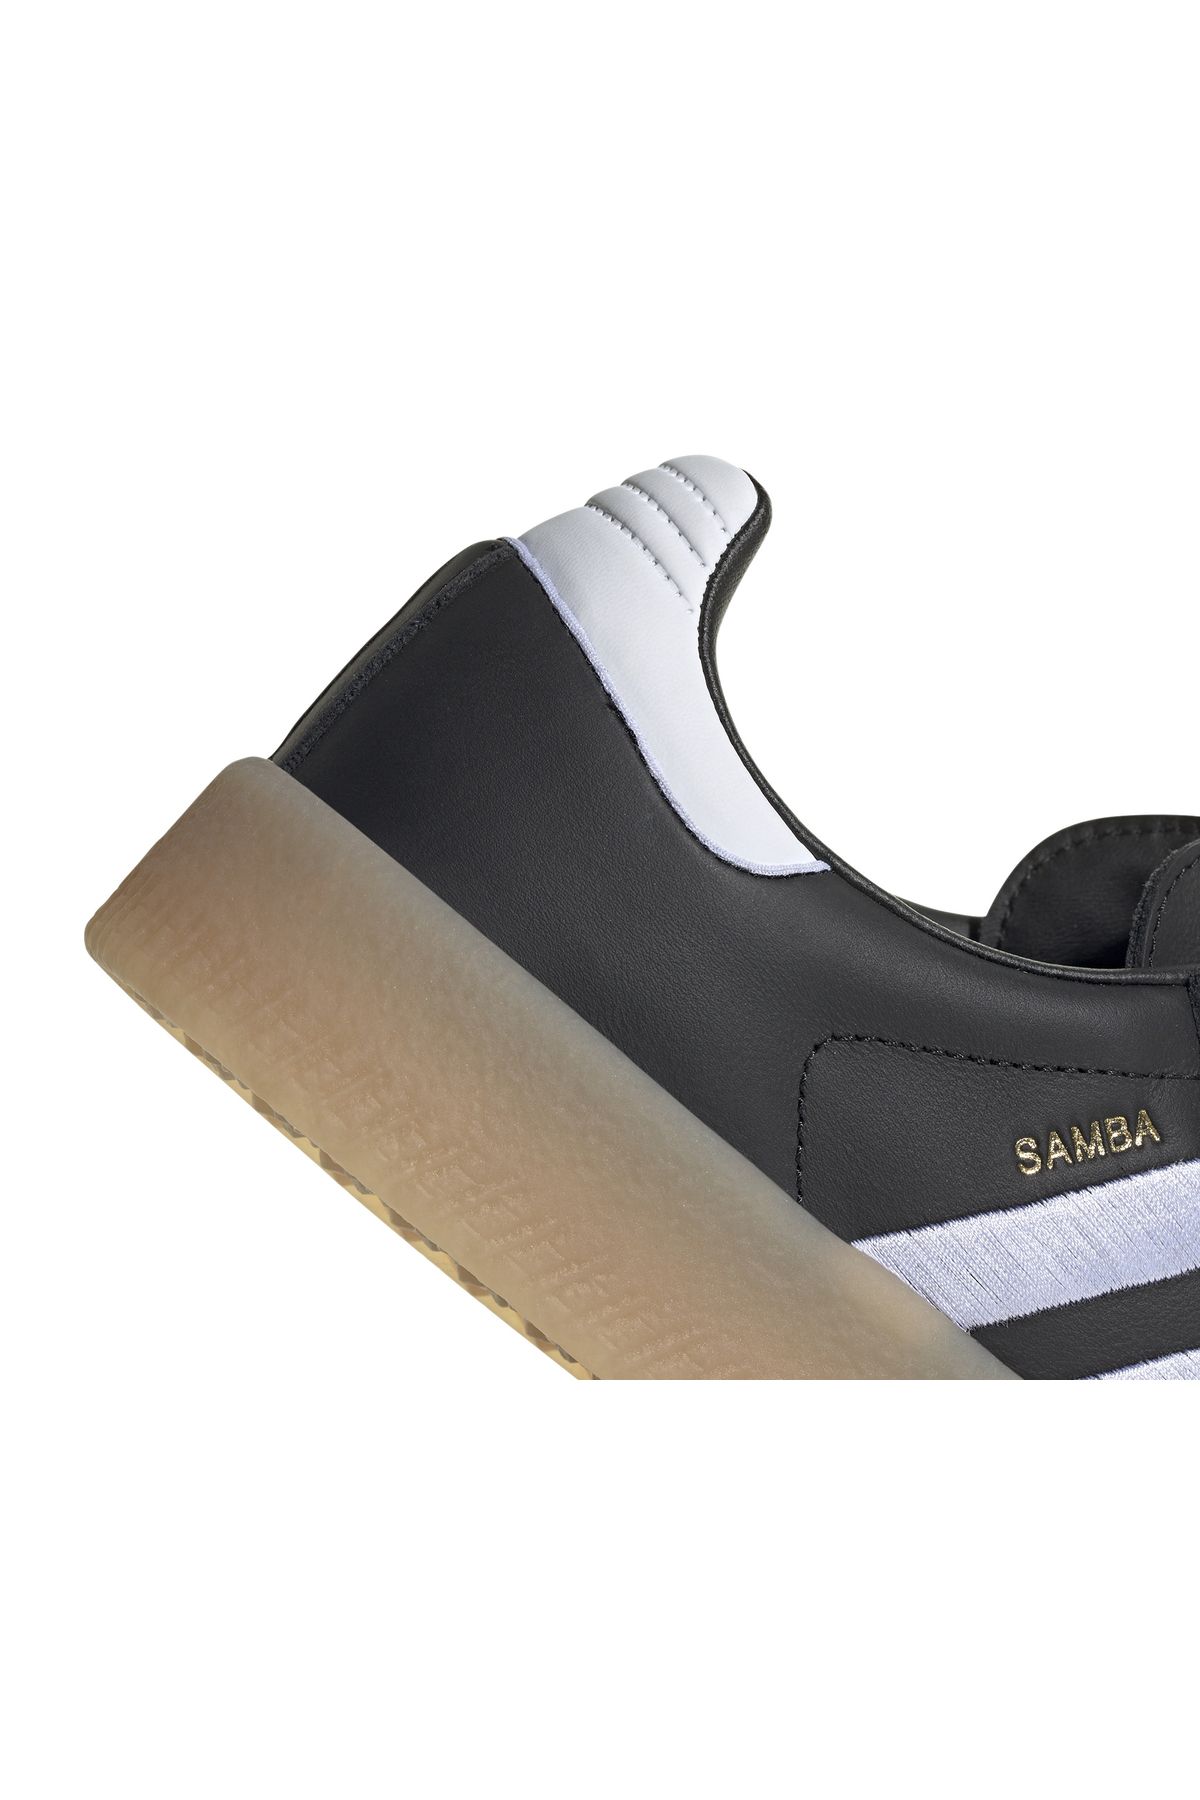 adidas کفش کتانی ورزشی زنانه مدل samba OG unisex